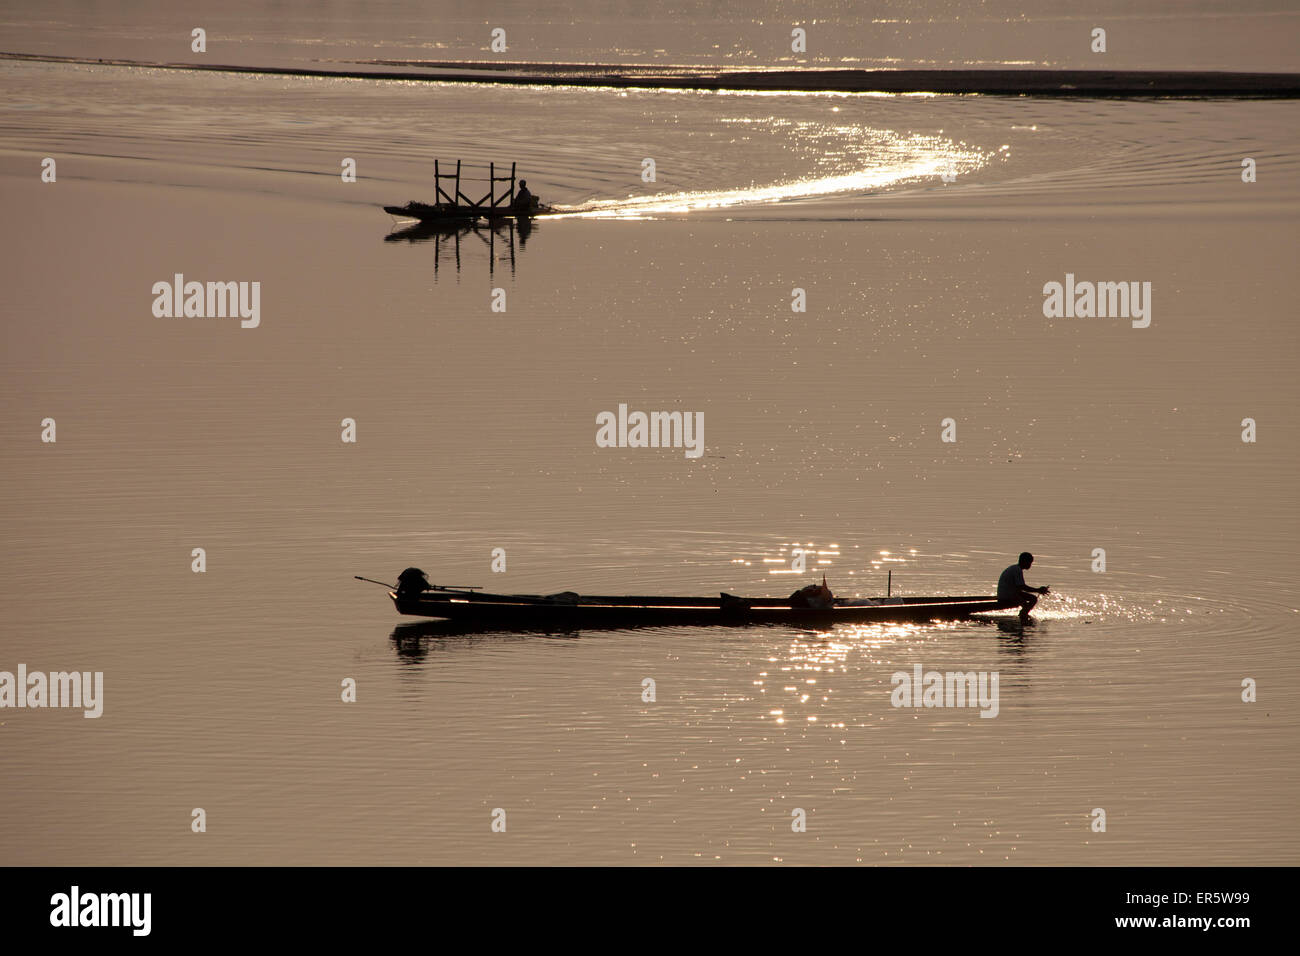 Barche da pesca sul fiume Mekong, Vientiane, la capitale del Laos, Asia Foto Stock